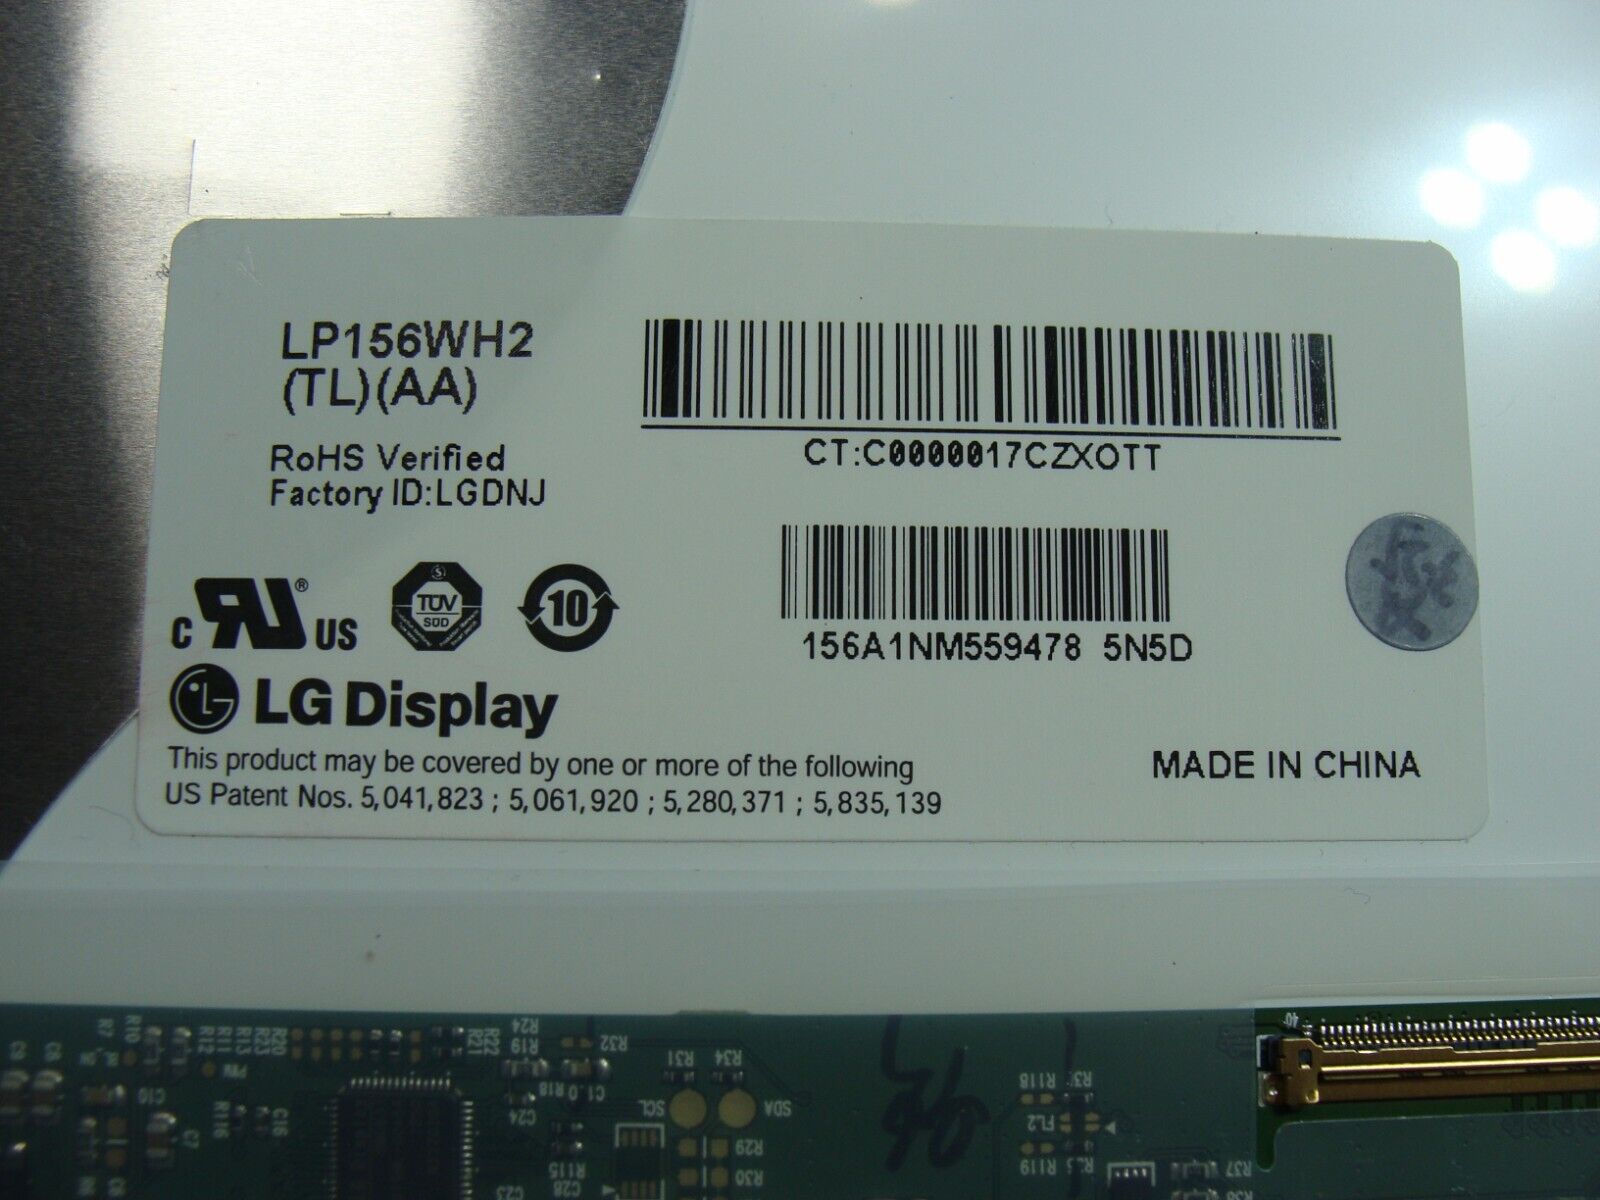 Toshiba Satellite L655 Series 15.6 HD LG Display LCD Screen LP156WH2 (TL) (AA)